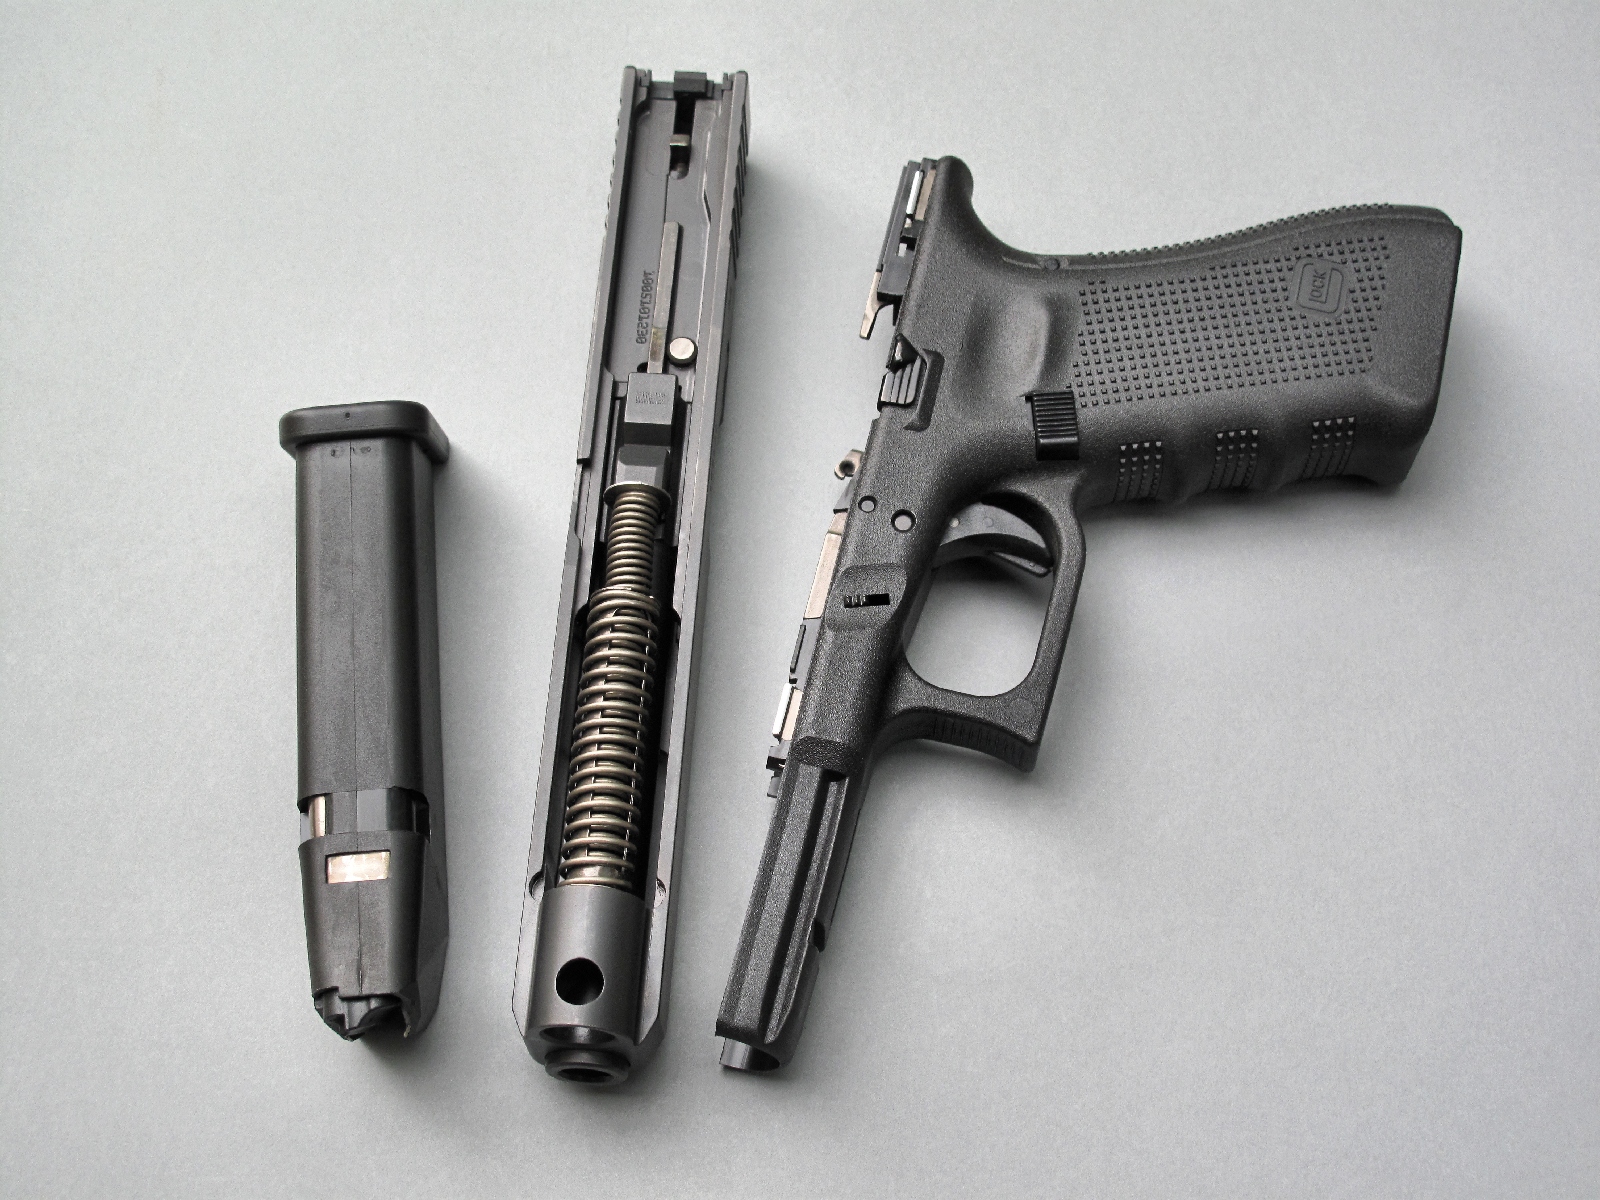 Le démontage sommaire d’un pistolet Glock, qui peut s’effectuer en quelques dixièmes de seconde, permet d’observer les principaux éléments de sécurité mis en œuvre par son système Safe Action.